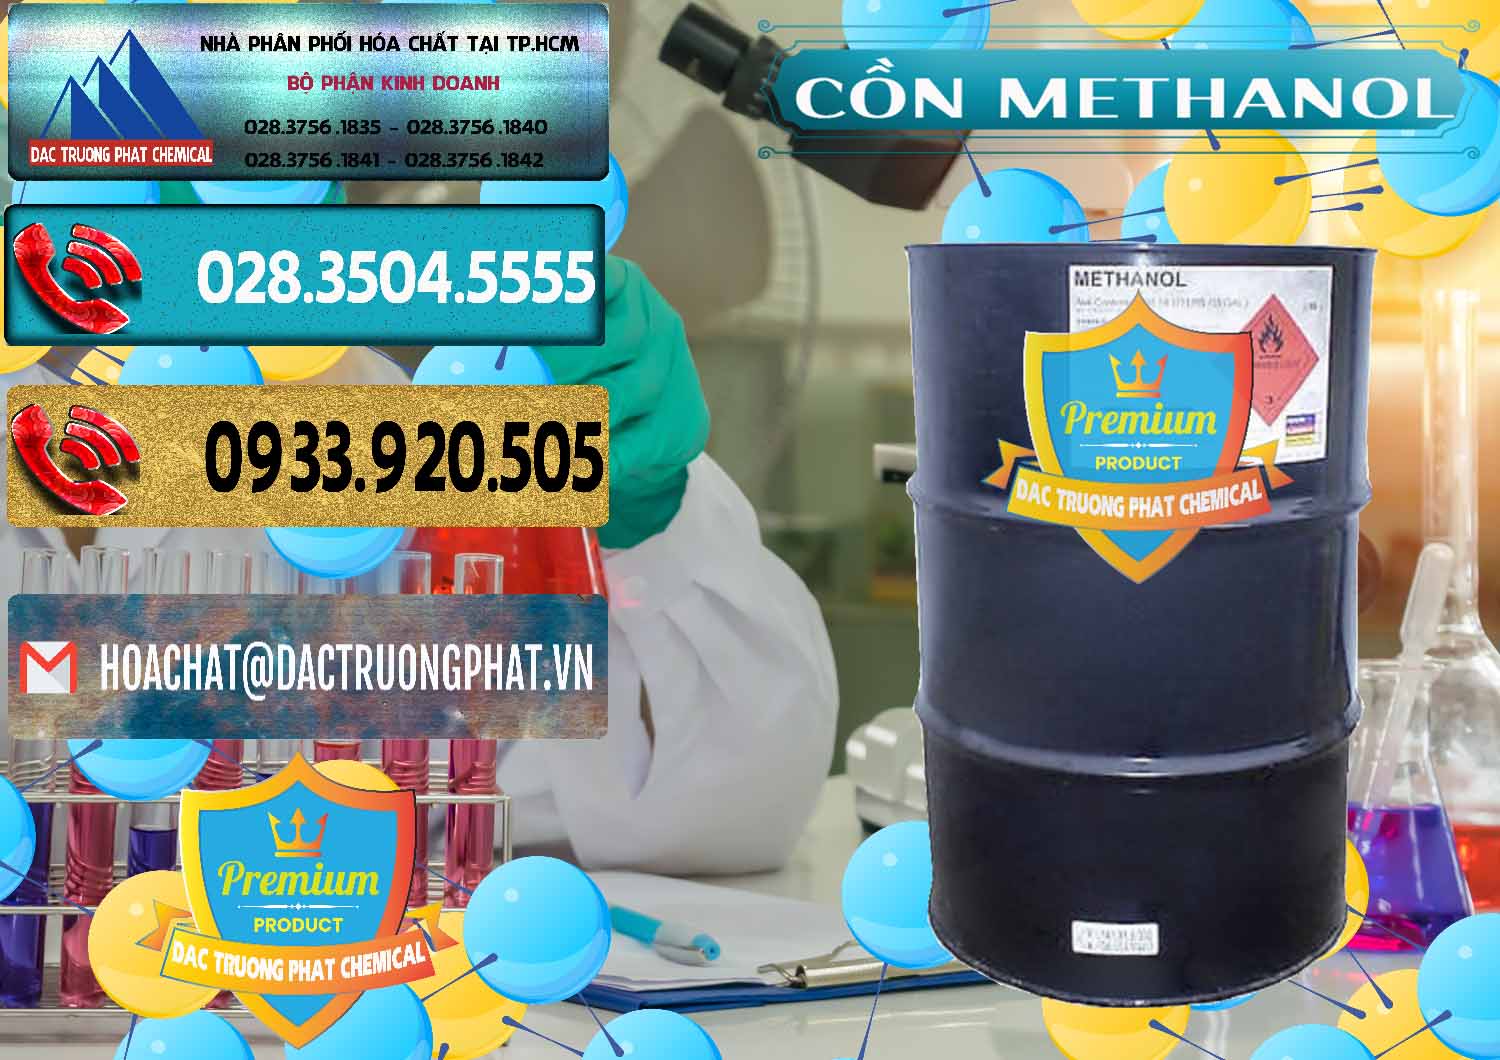 Chuyên nhập khẩu ( bán ) Cồn Methanol - Methyl Alcohol Mã Lai Malaysia - 0331 - Nơi chuyên nhập khẩu - phân phối hóa chất tại TP.HCM - hoachatdetnhuom.com